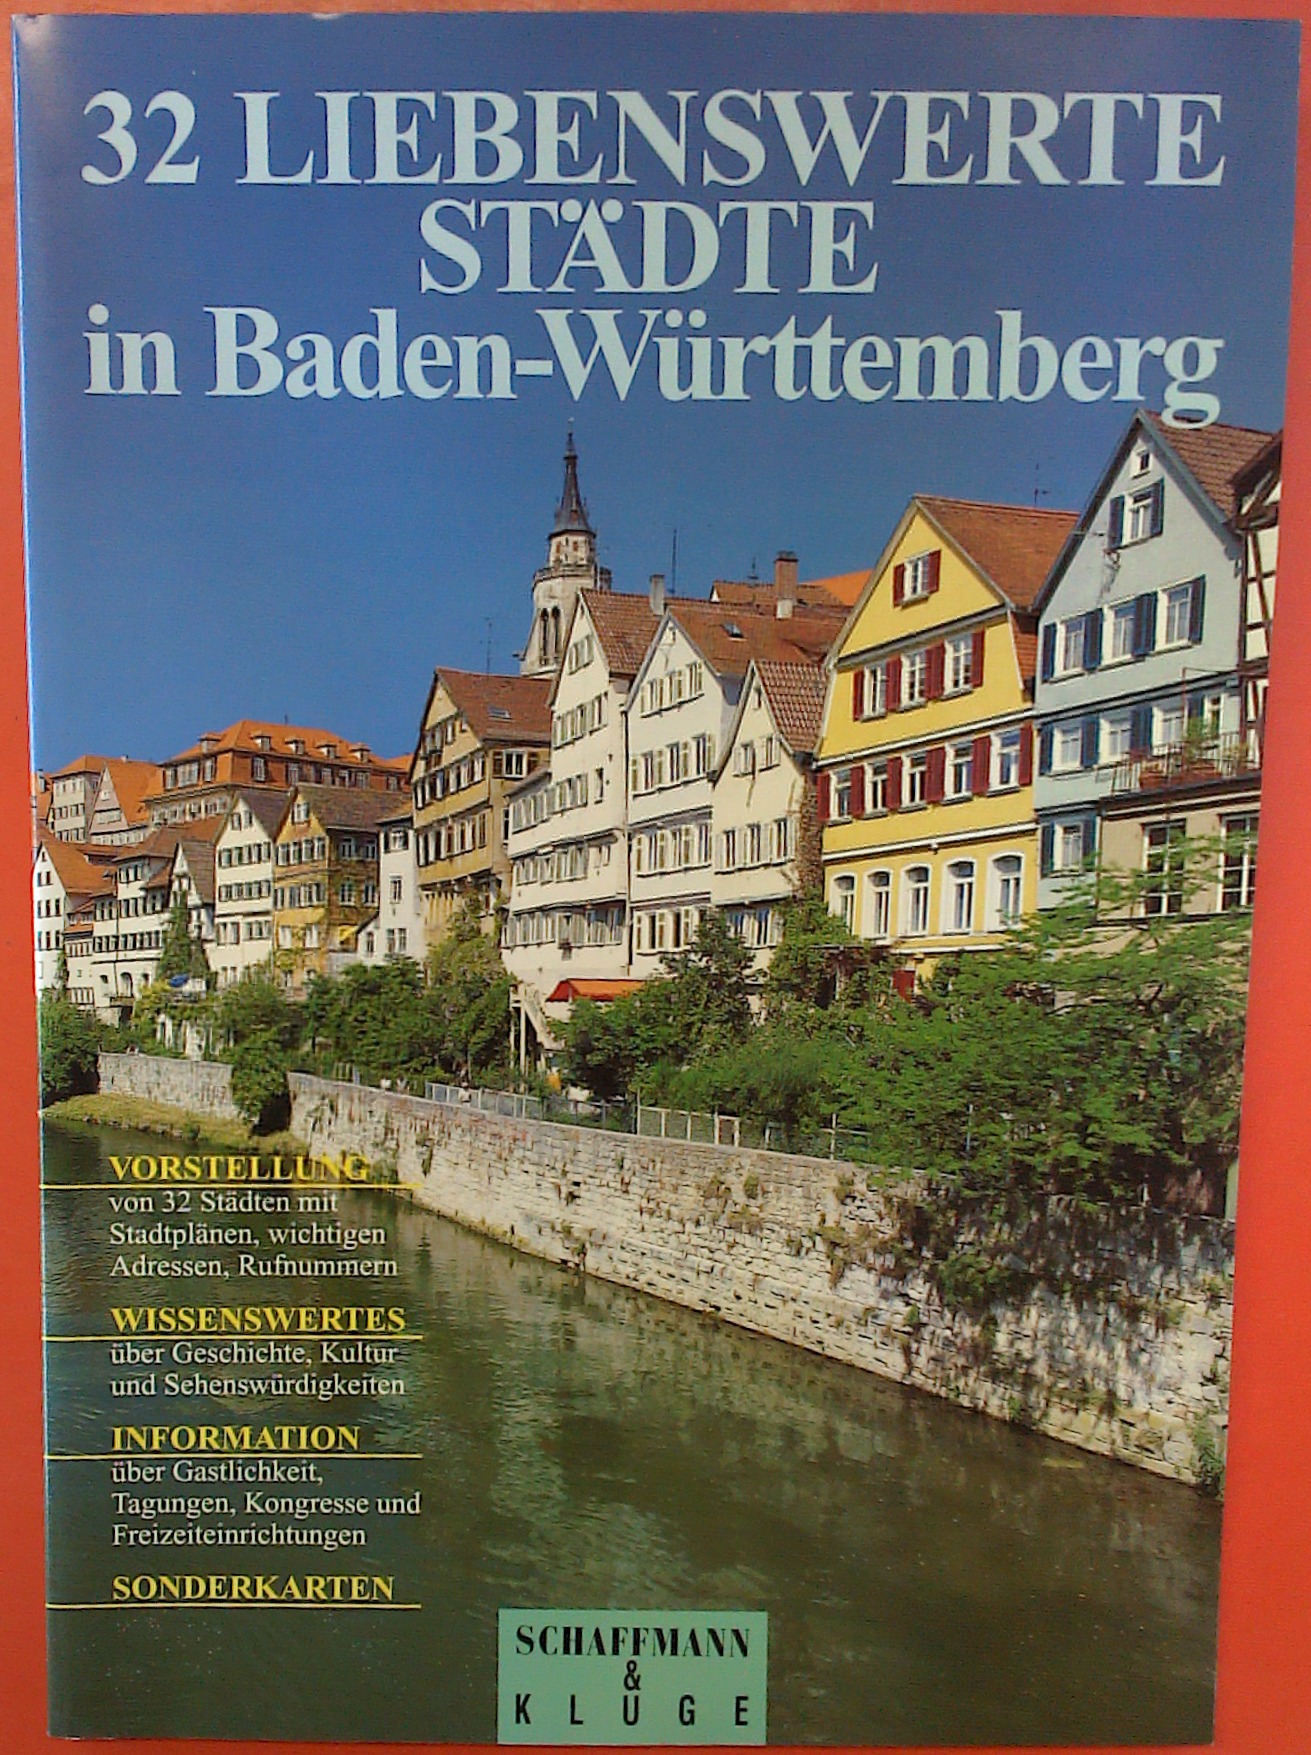 32 Liebenswerte Städte in Baden Württemberg - Landesfremdenverkehrsverband Baden Württemberg